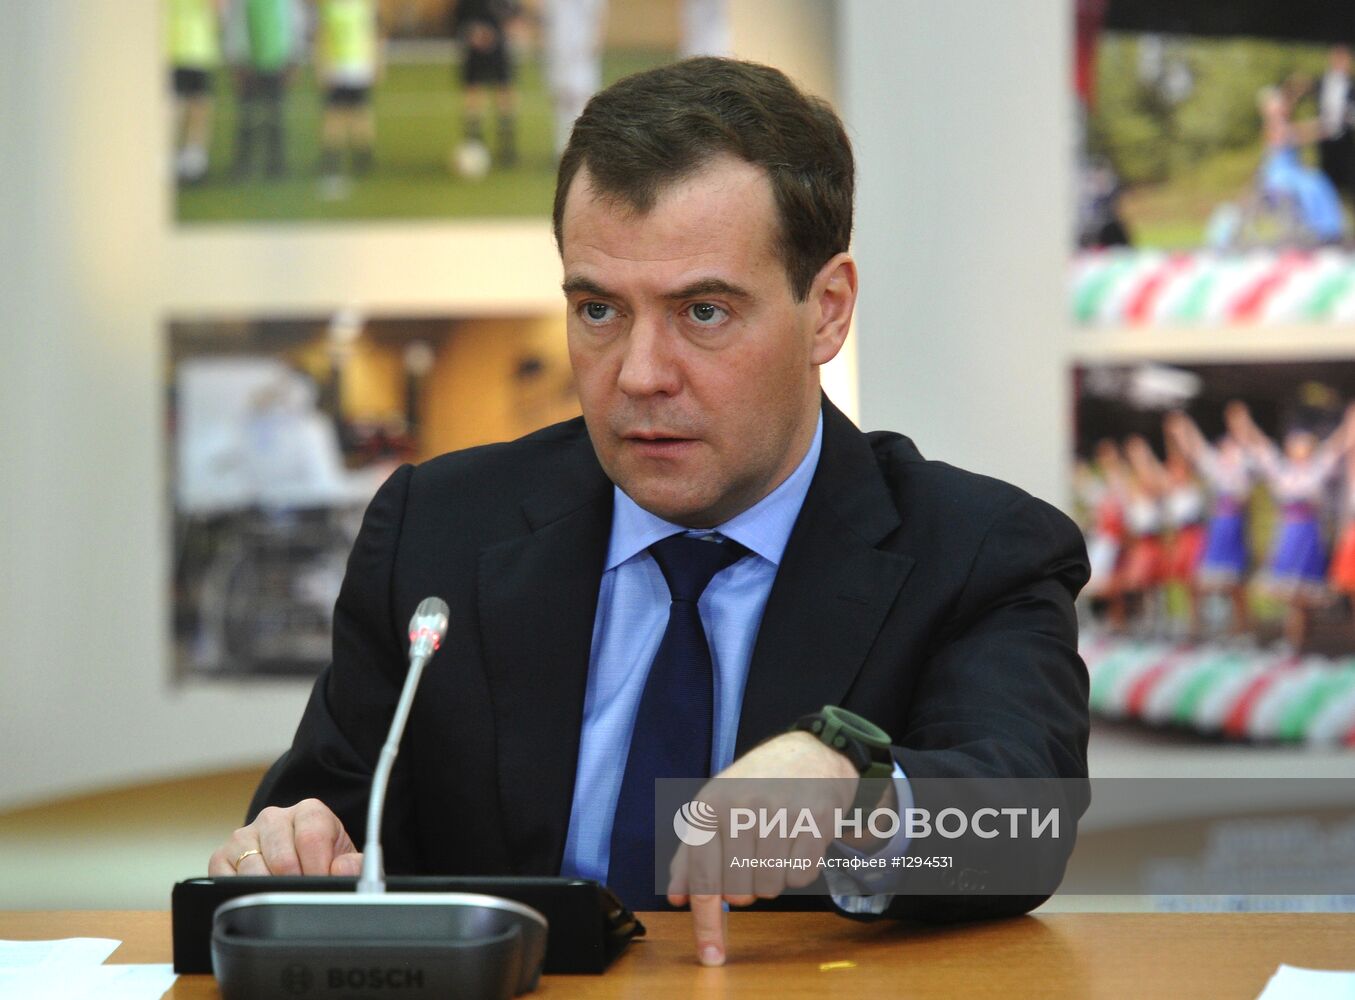 Д.Медведев провел совещание по вопросу трудоустройства инвалидов